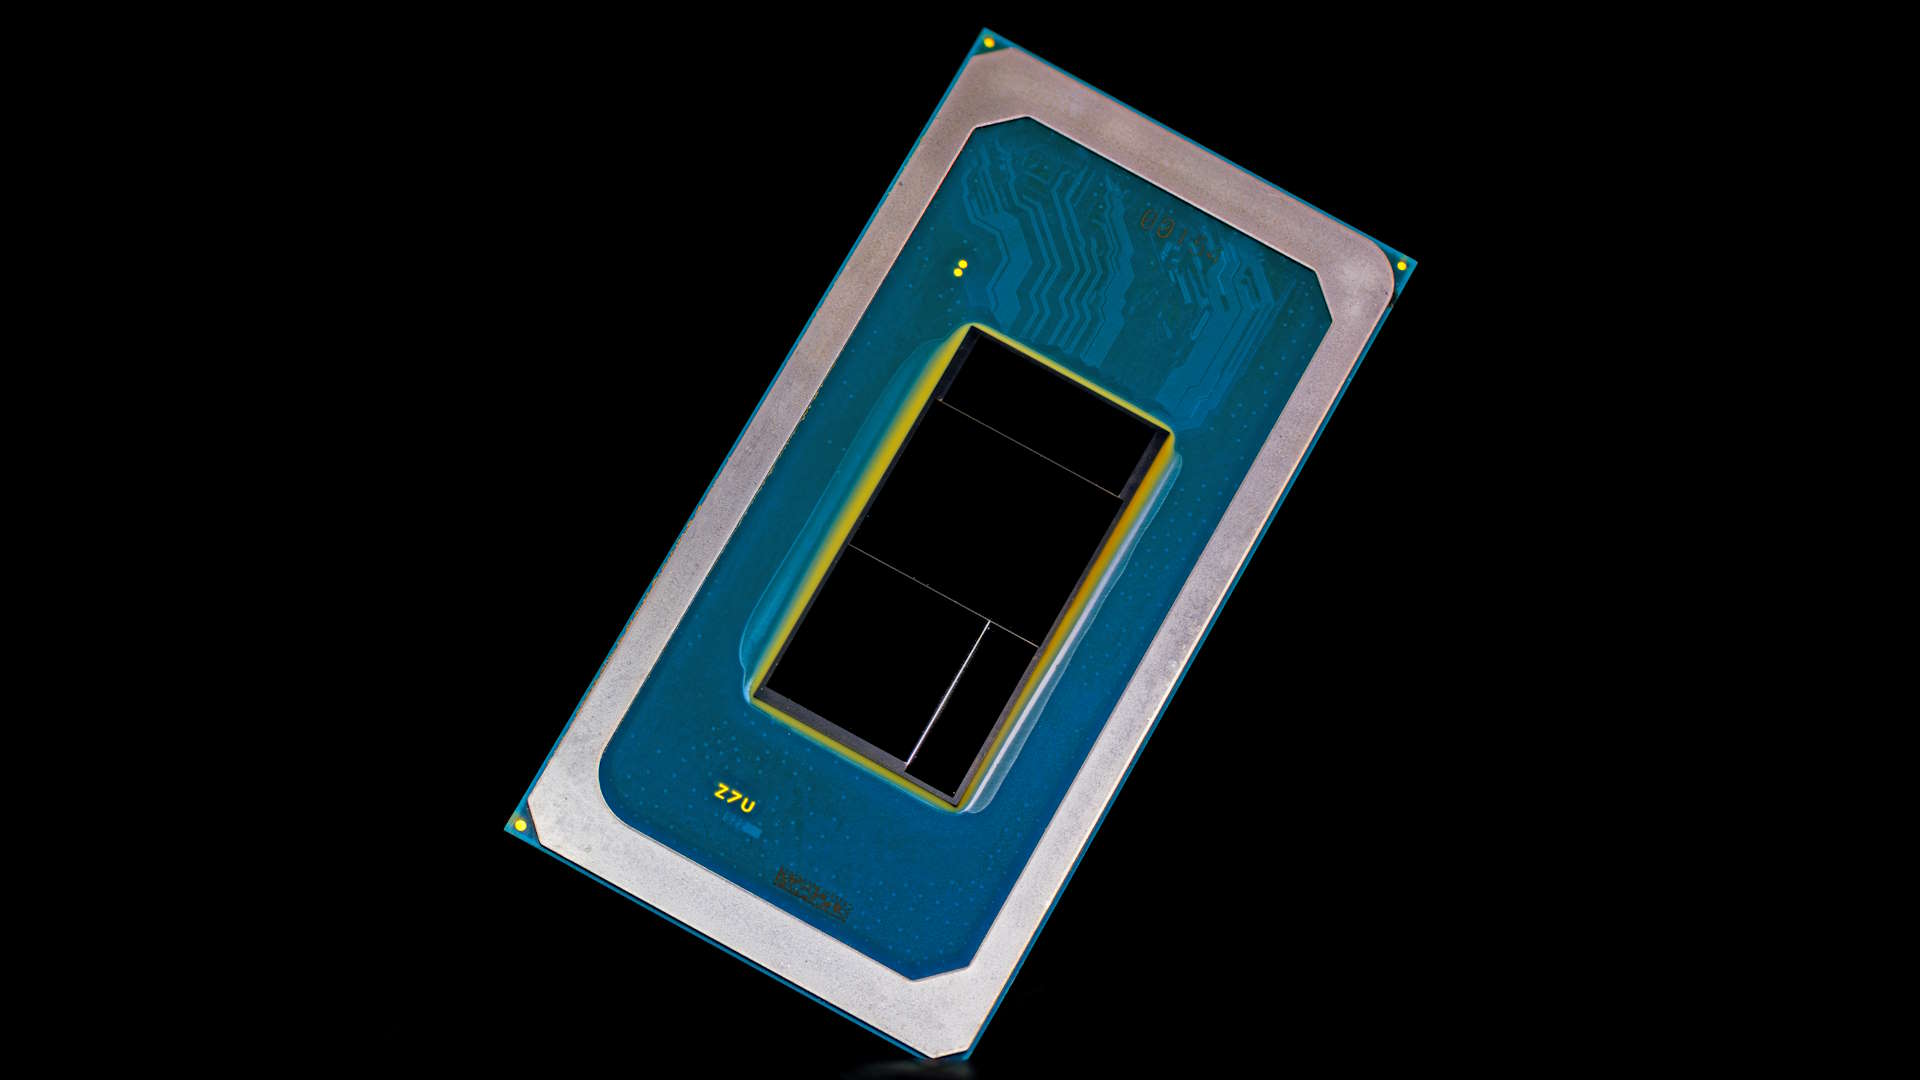 Intel Meteor Lake CPU